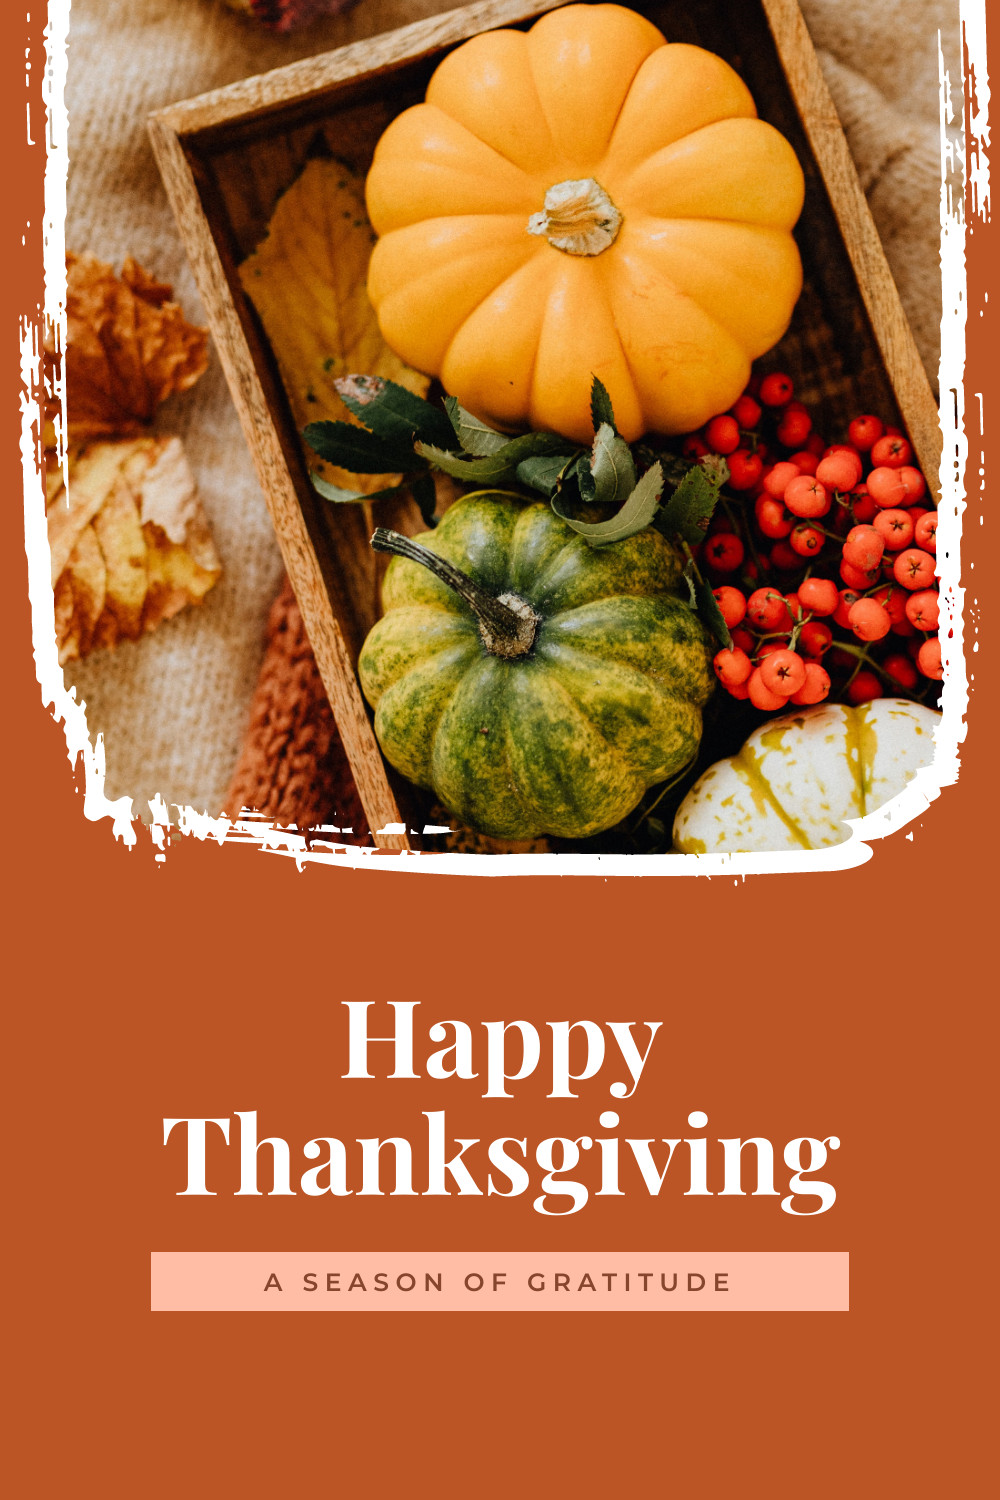 Season of Gratitude Thanksgiving Facebook Cover 820x360